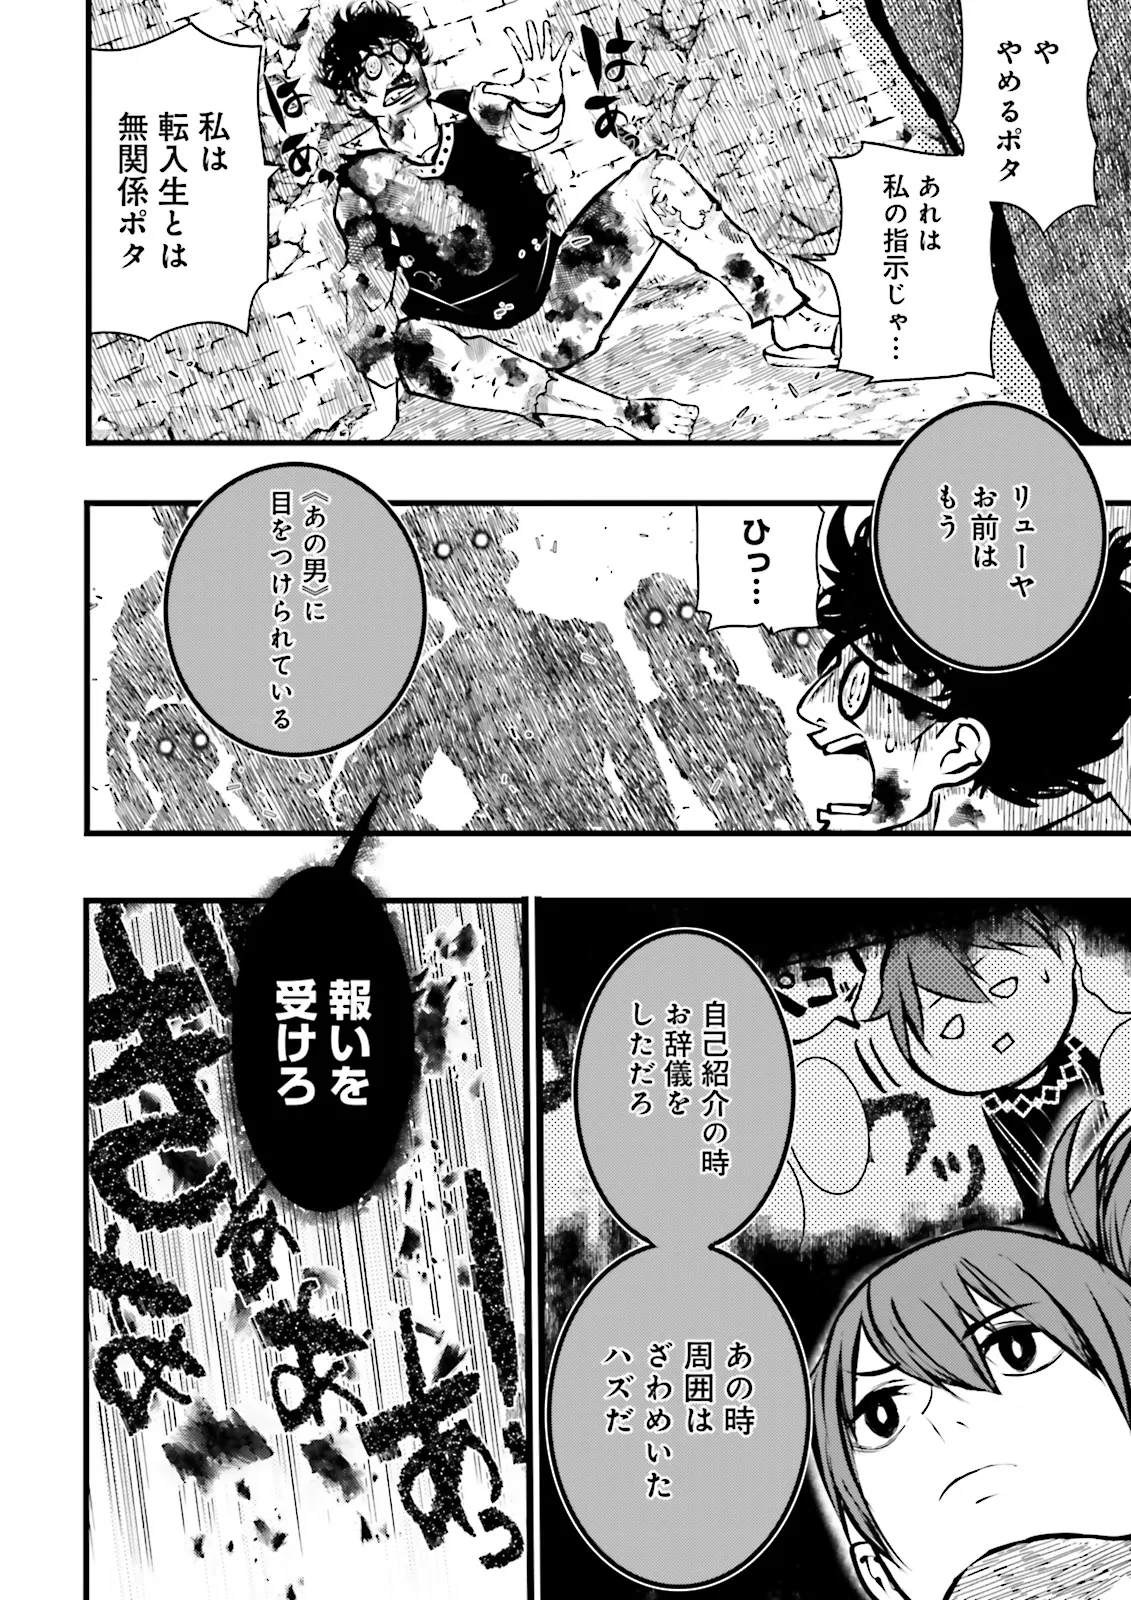 Sukiru Ga Nakereba Level wo Ageru ~ 99 Ga Kansuto No Sekai De Reberu 800 Man Kara Sutato ~ - Chapter 39.1 - Page 4